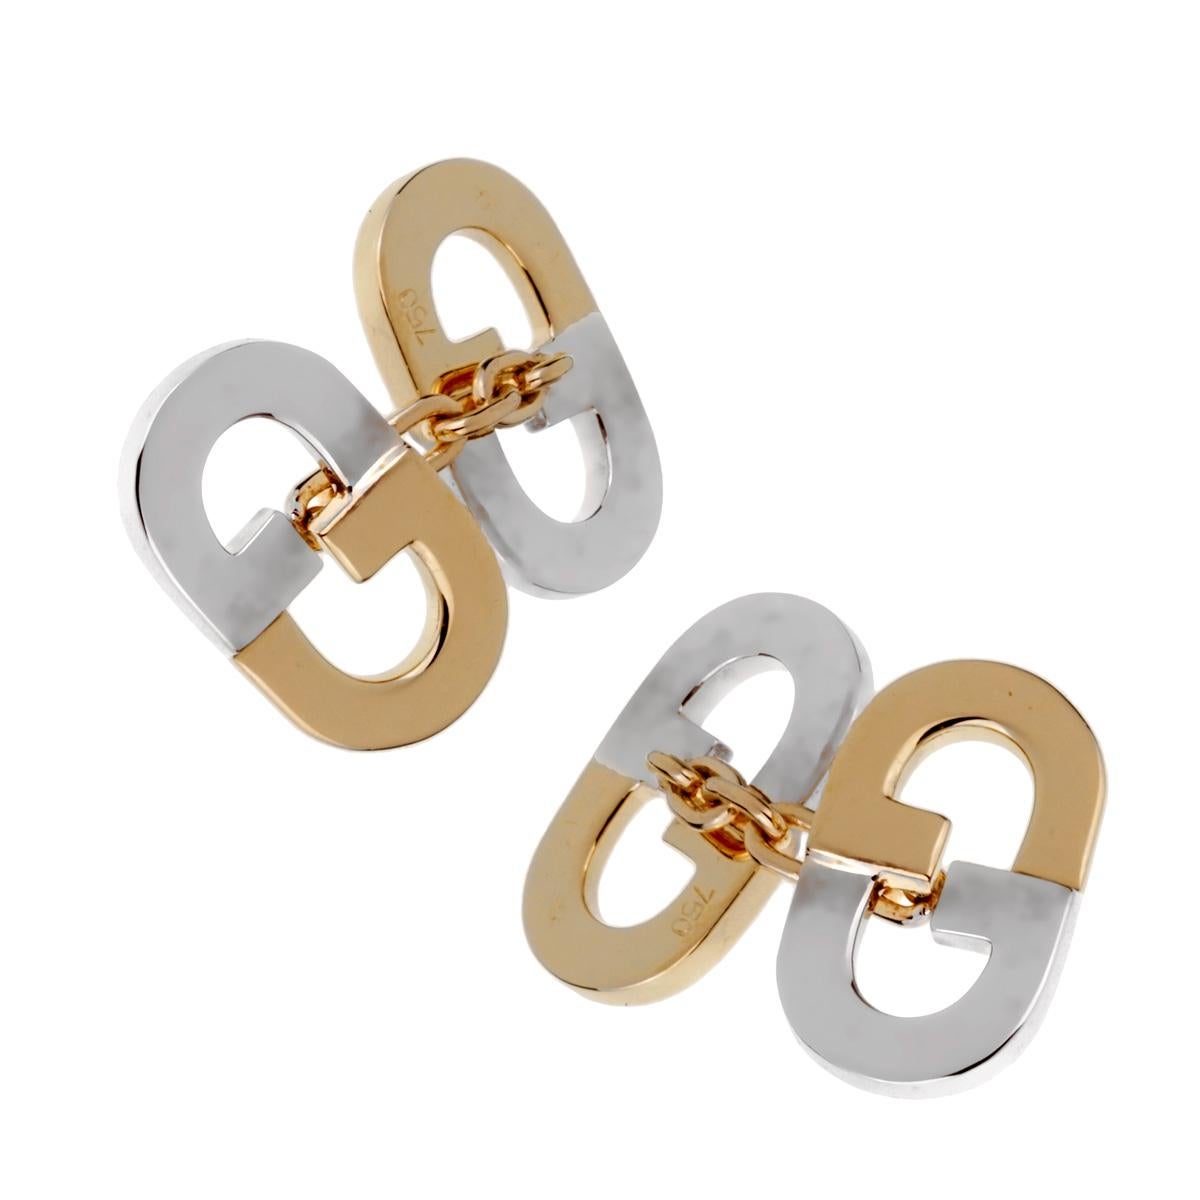 Une paire chic de boutons de manchette Gucci en or blanc et jaune 18 carats, avec le motif GG emblématique.